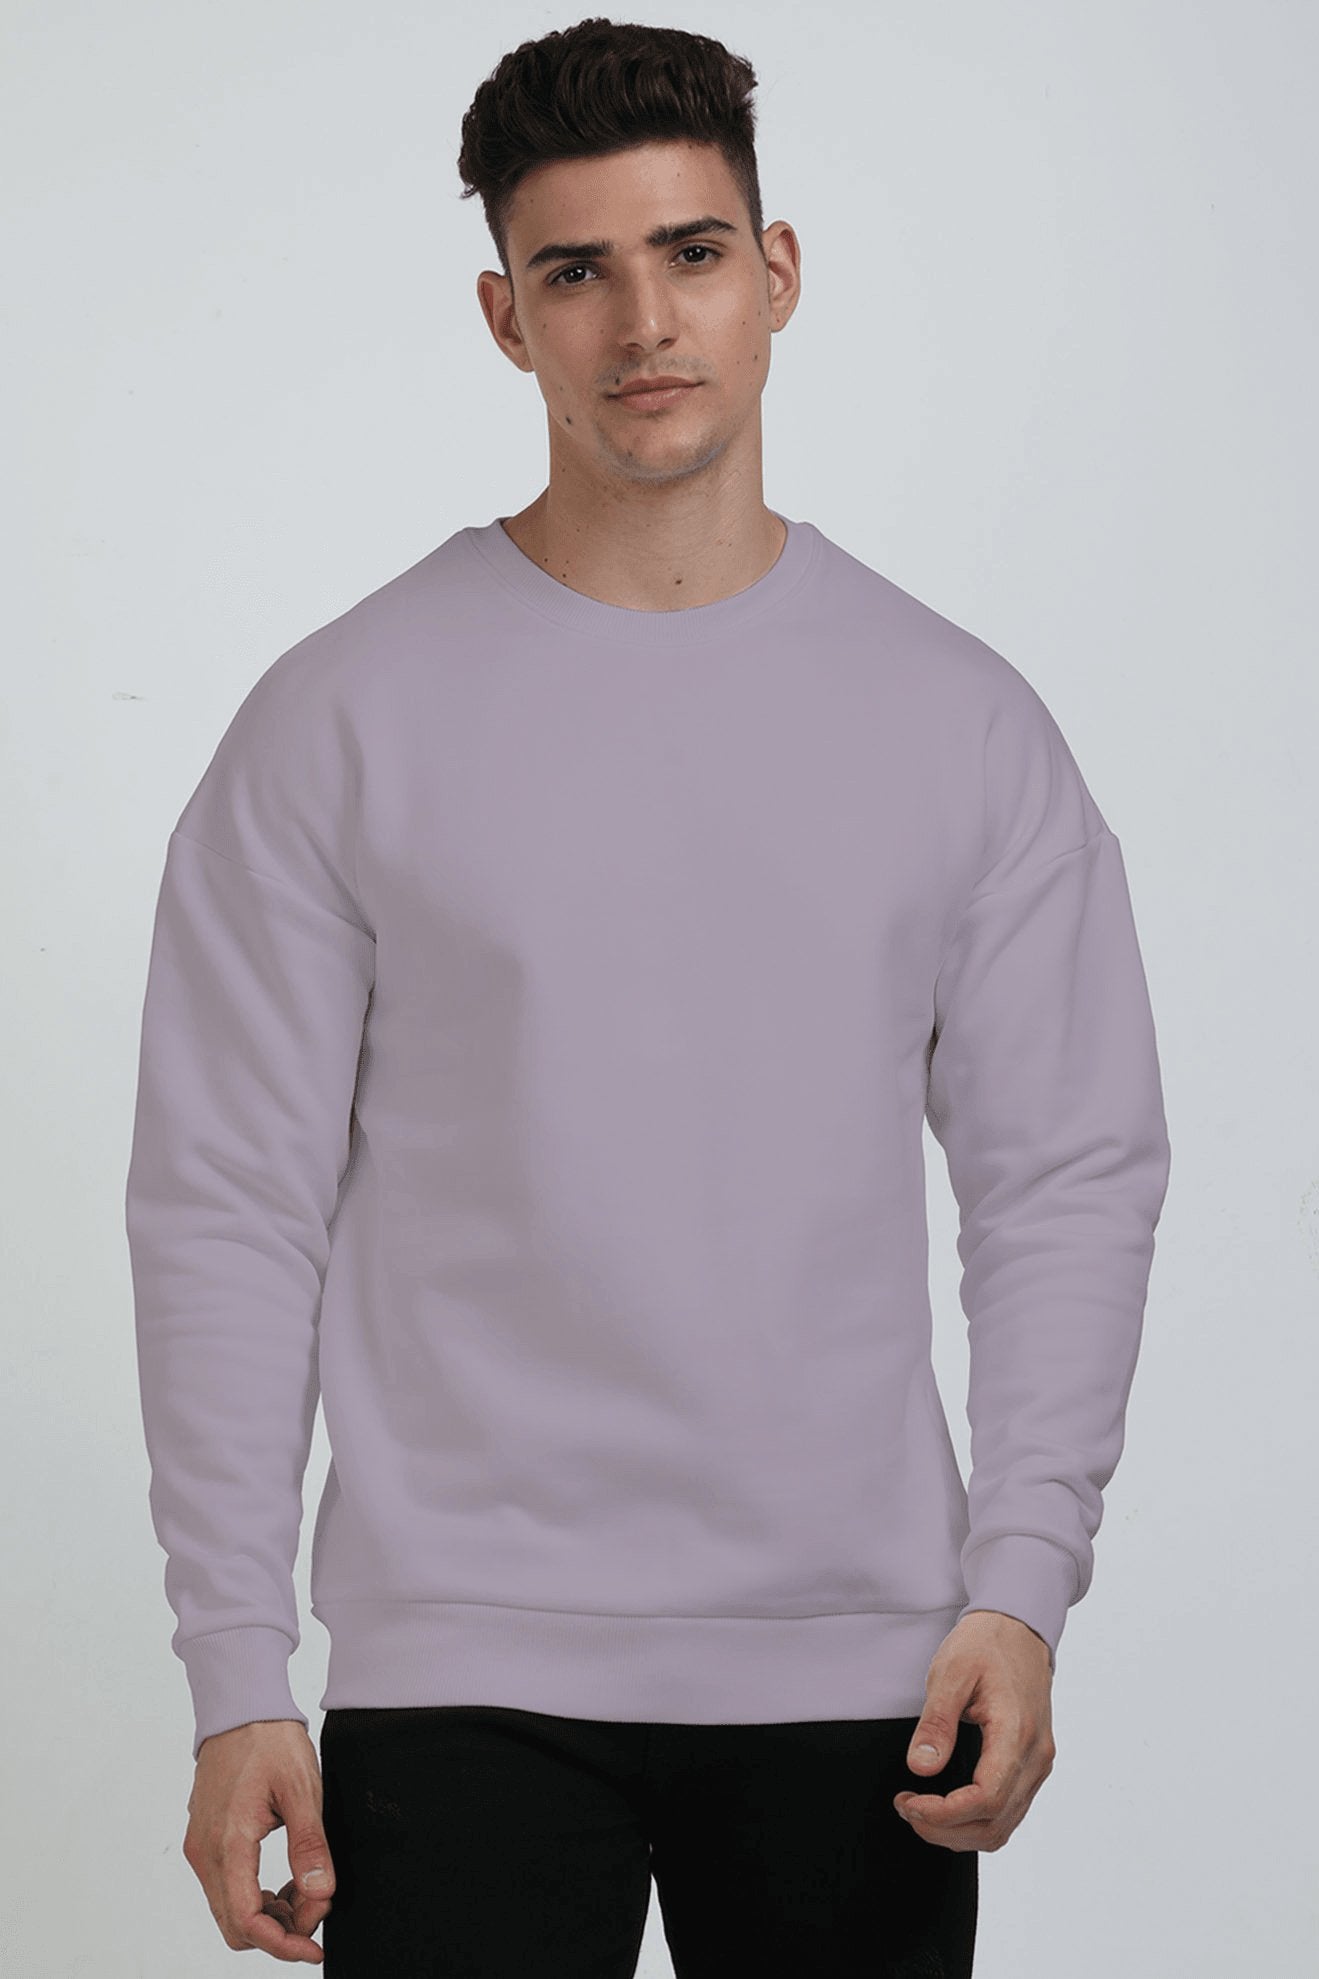 Unisex Oversized Sweatshirts - The Vybe Store